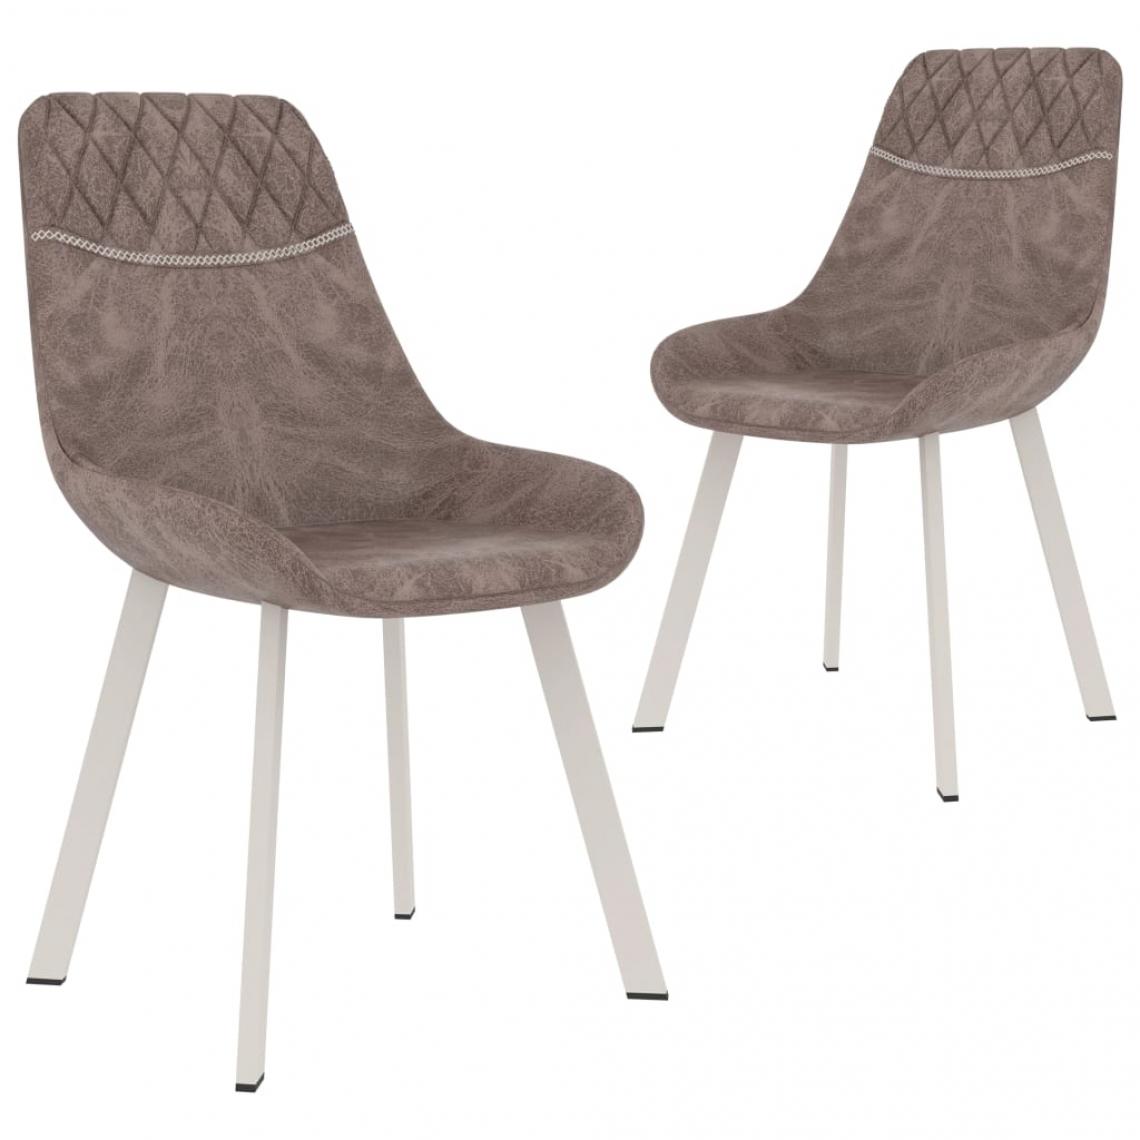 Decoshop26 - Lot de 2 chaises de salle à manger cuisine design moderne similicuir marron CDS020728 - Chaises